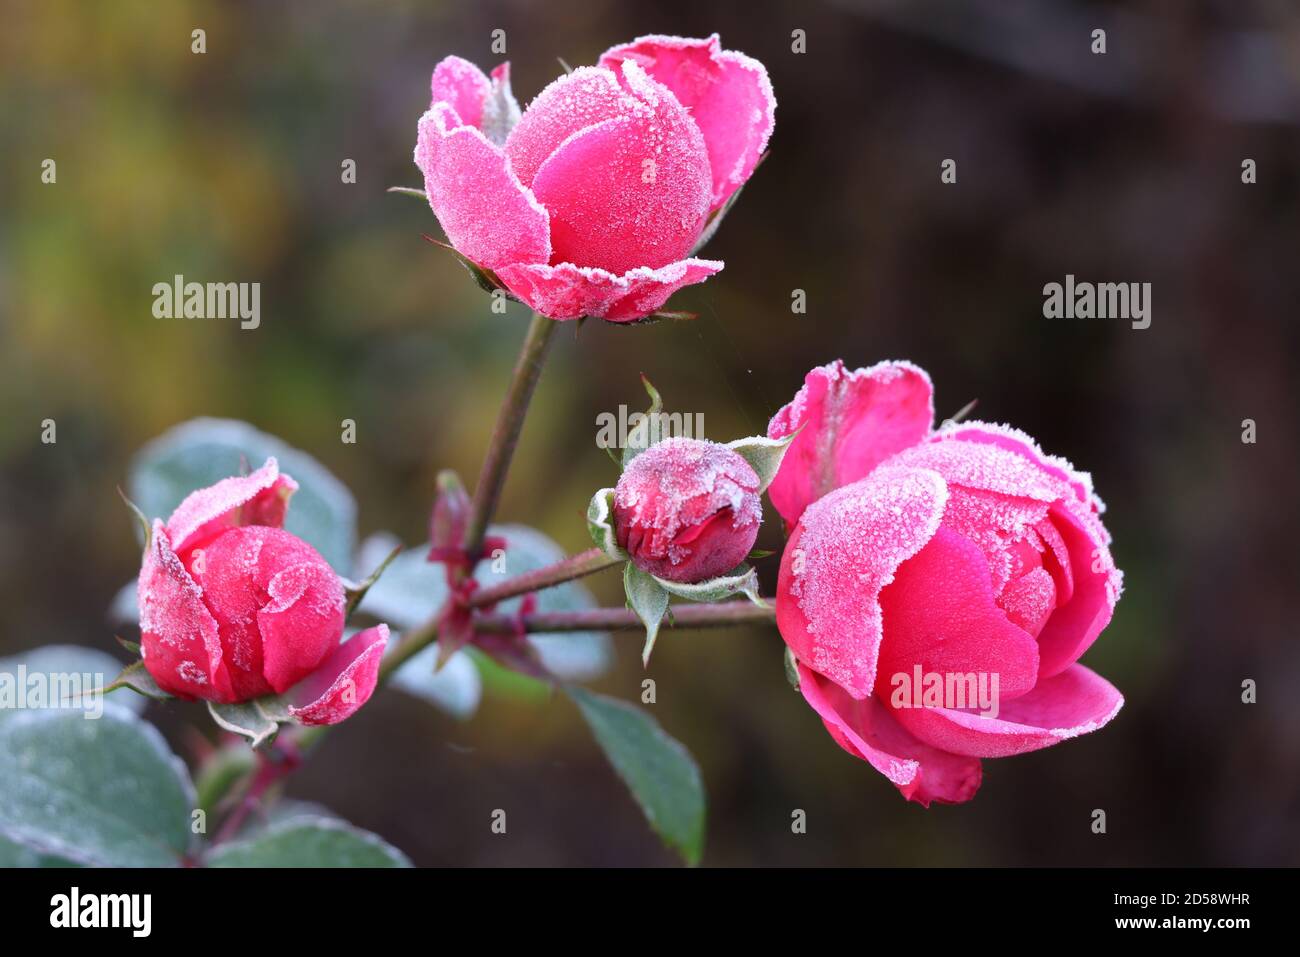 Pomponella rose avec gel blanc à la fin de l'automne Banque D'Images